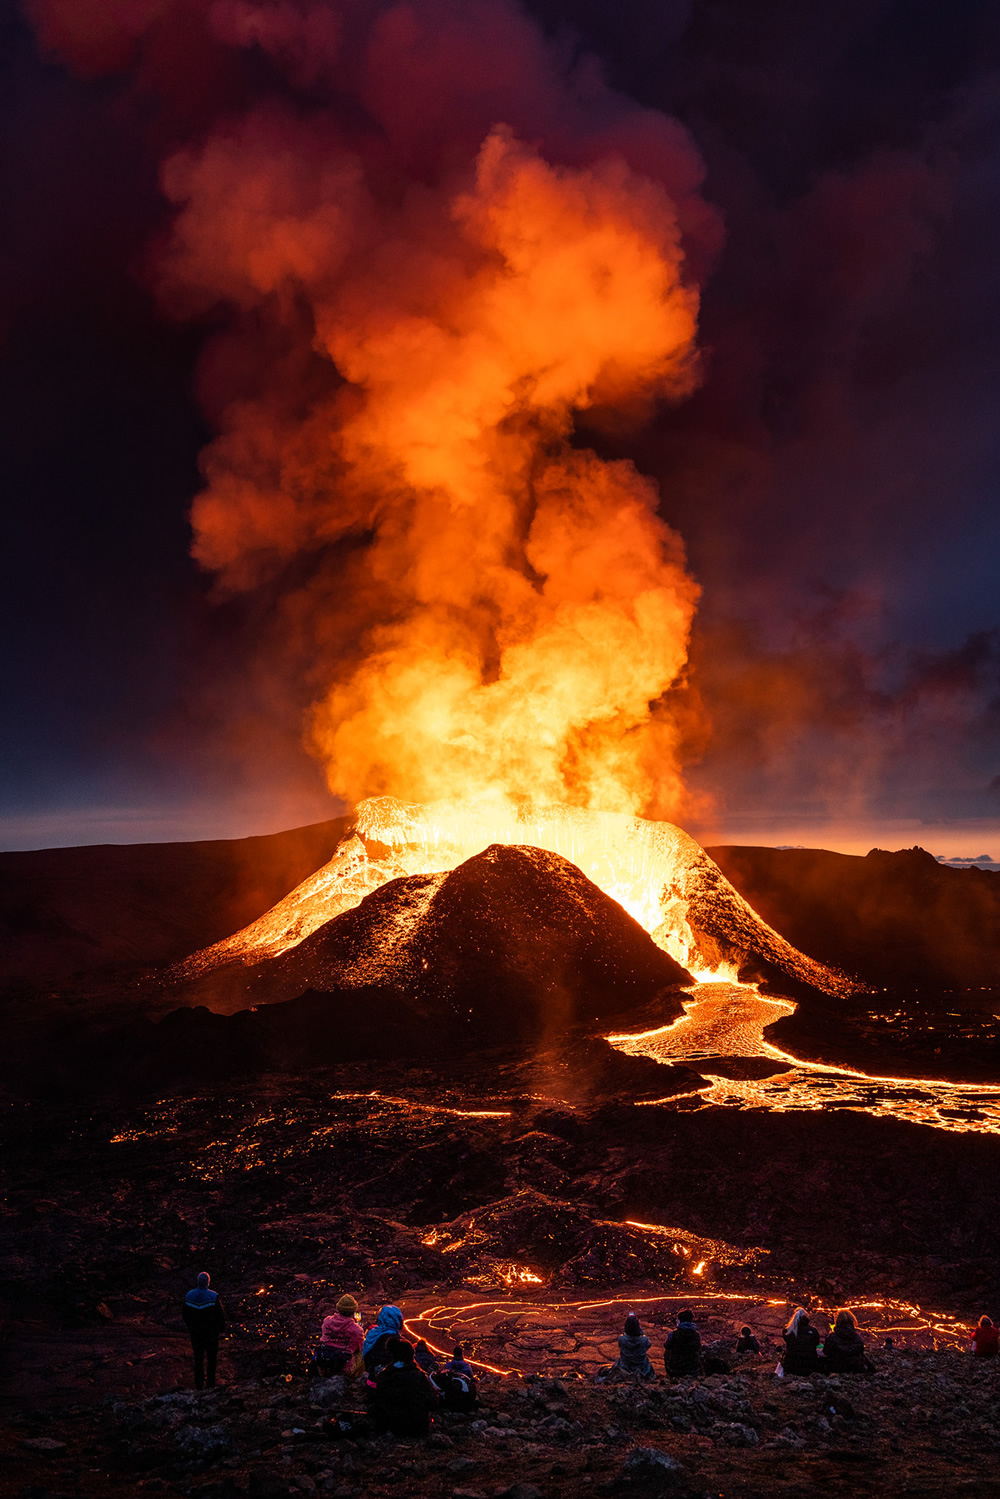 Iceland Volcanic Eruption: Photo Series By Siggeir Hafsteinsson